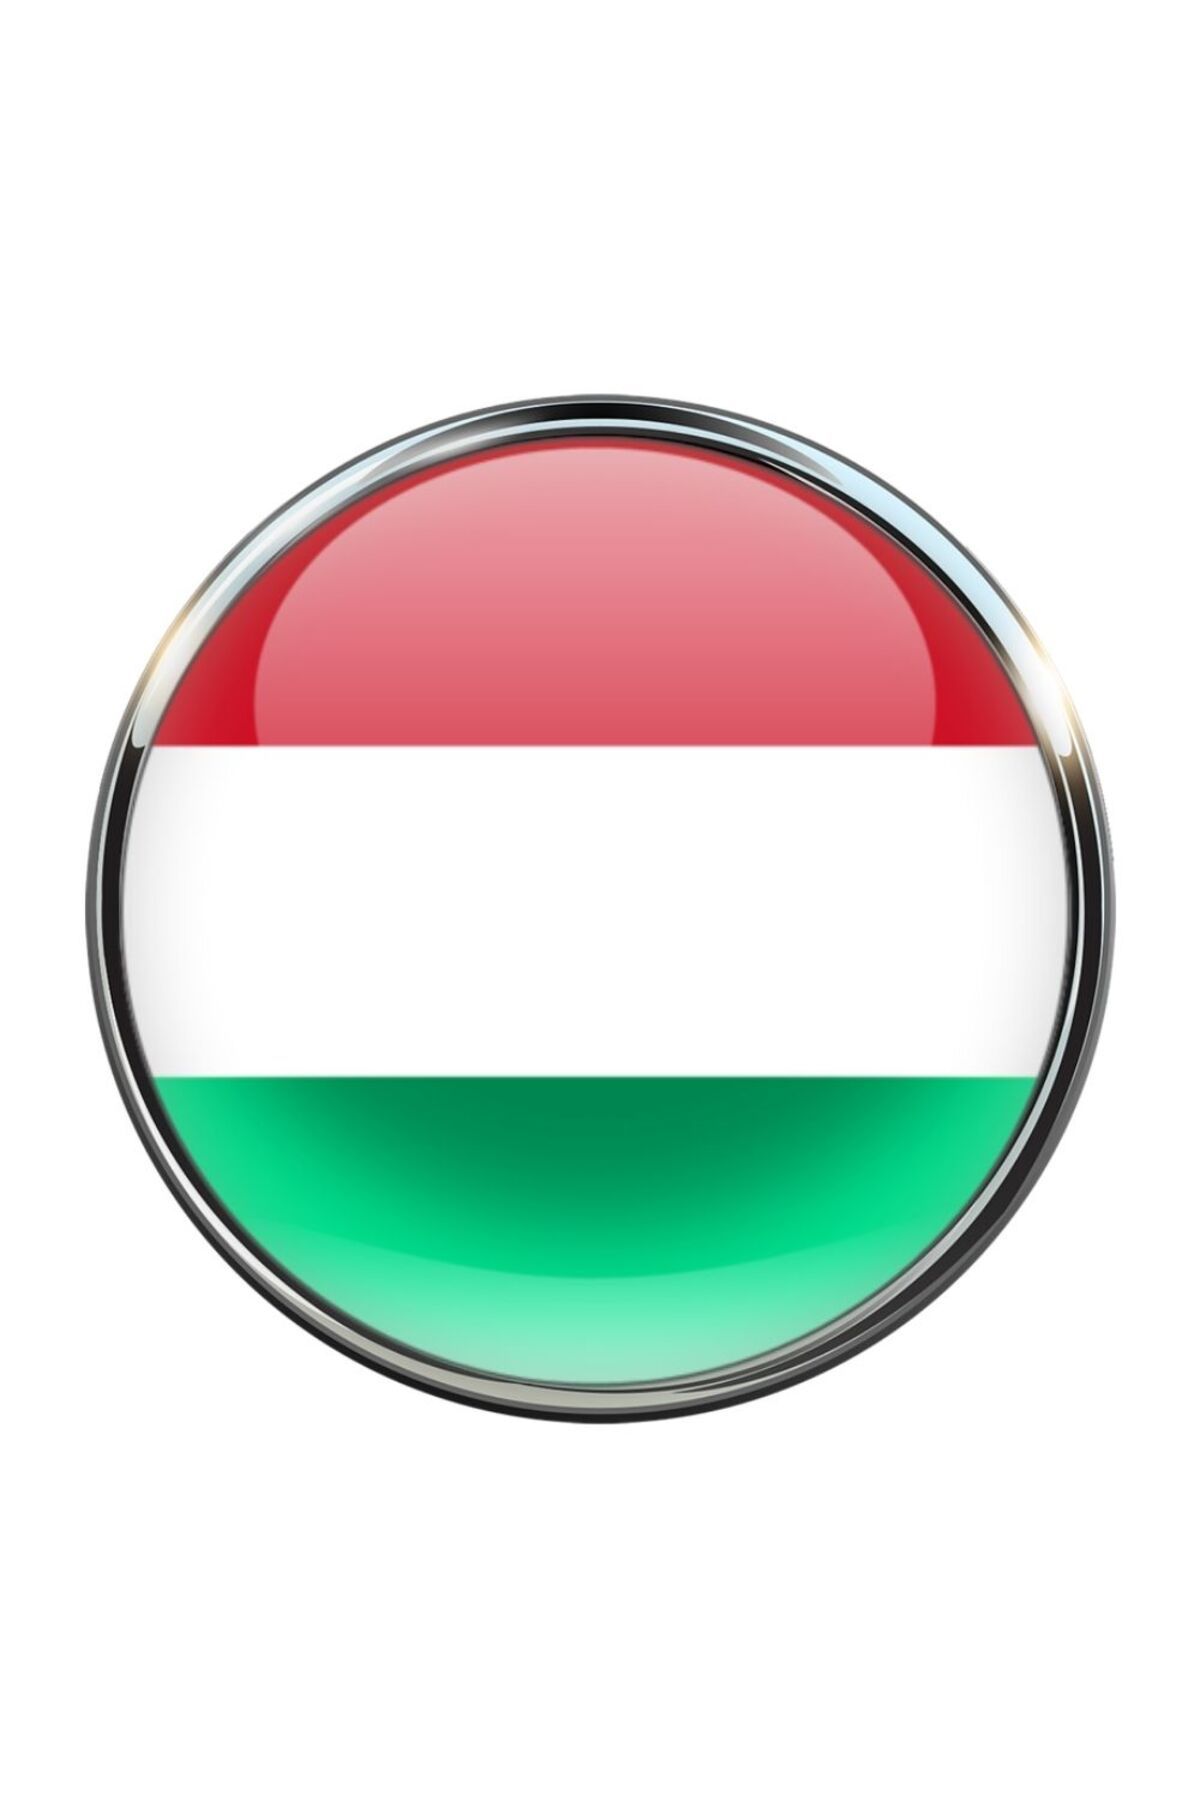 Market66 Maceristan Hungary Ülke Bayrağı Paslanmaz Çelik İğneli 3D Yuvarlak Camlı Rozet